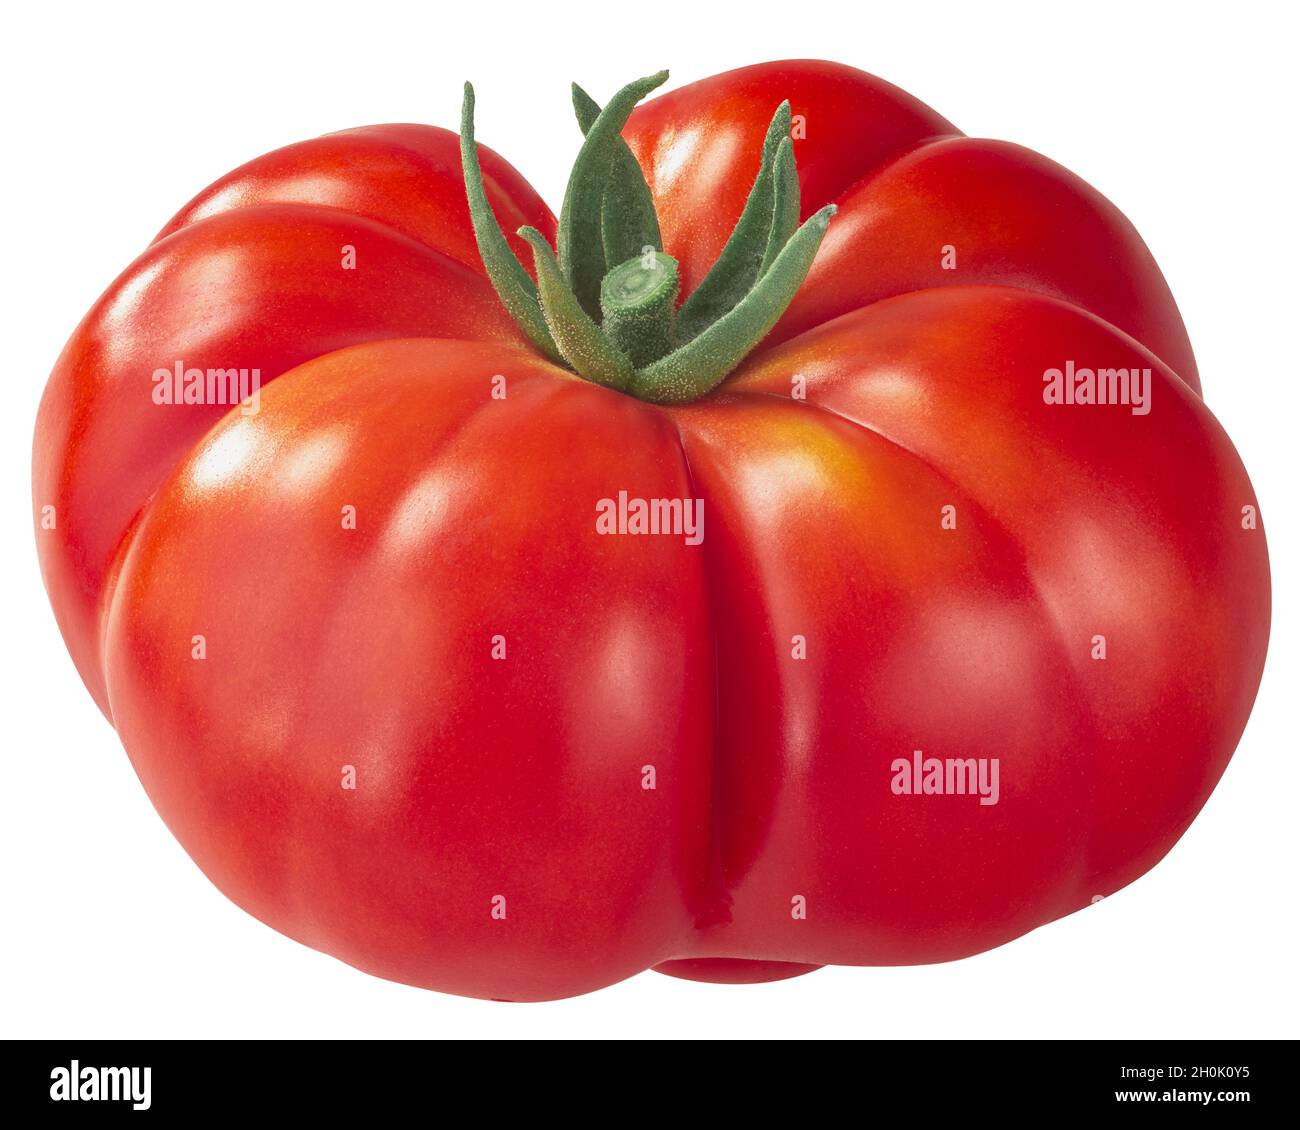 Reisetomate heirloom ribbed tomato (Solanum lycopersicum fruit) isolated Stock Photo